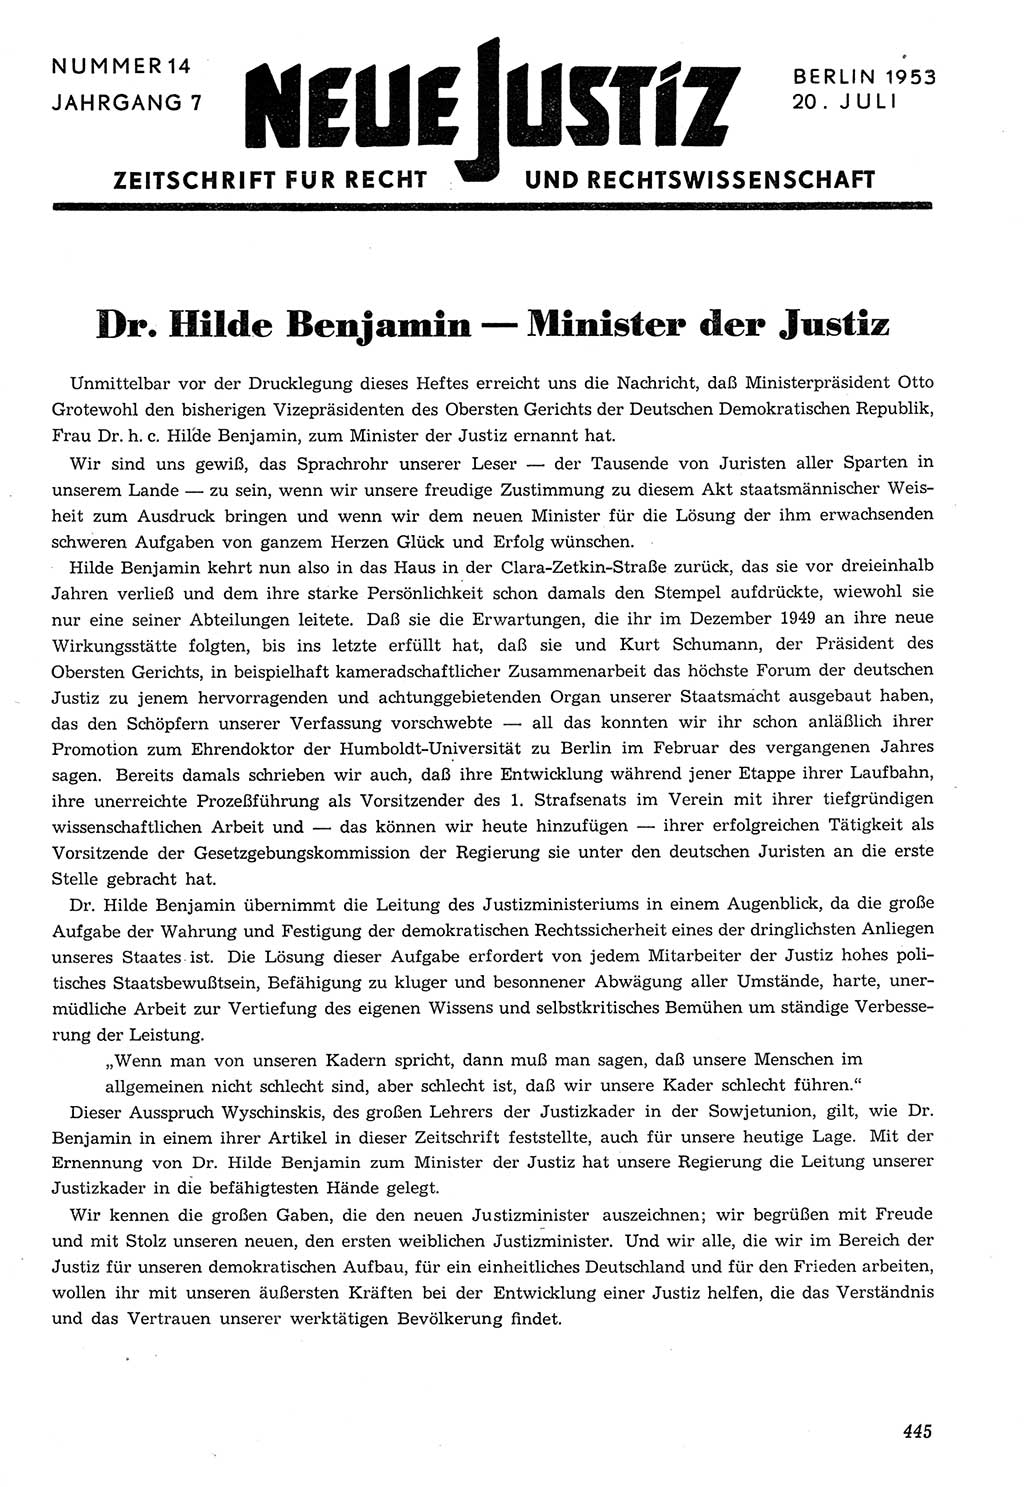 Neue Justiz (NJ), Zeitschrift für Recht und Rechtswissenschaft [Deutsche Demokratische Republik (DDR)], 7. Jahrgang 1953, Seite 445 (NJ DDR 1953, S. 445)